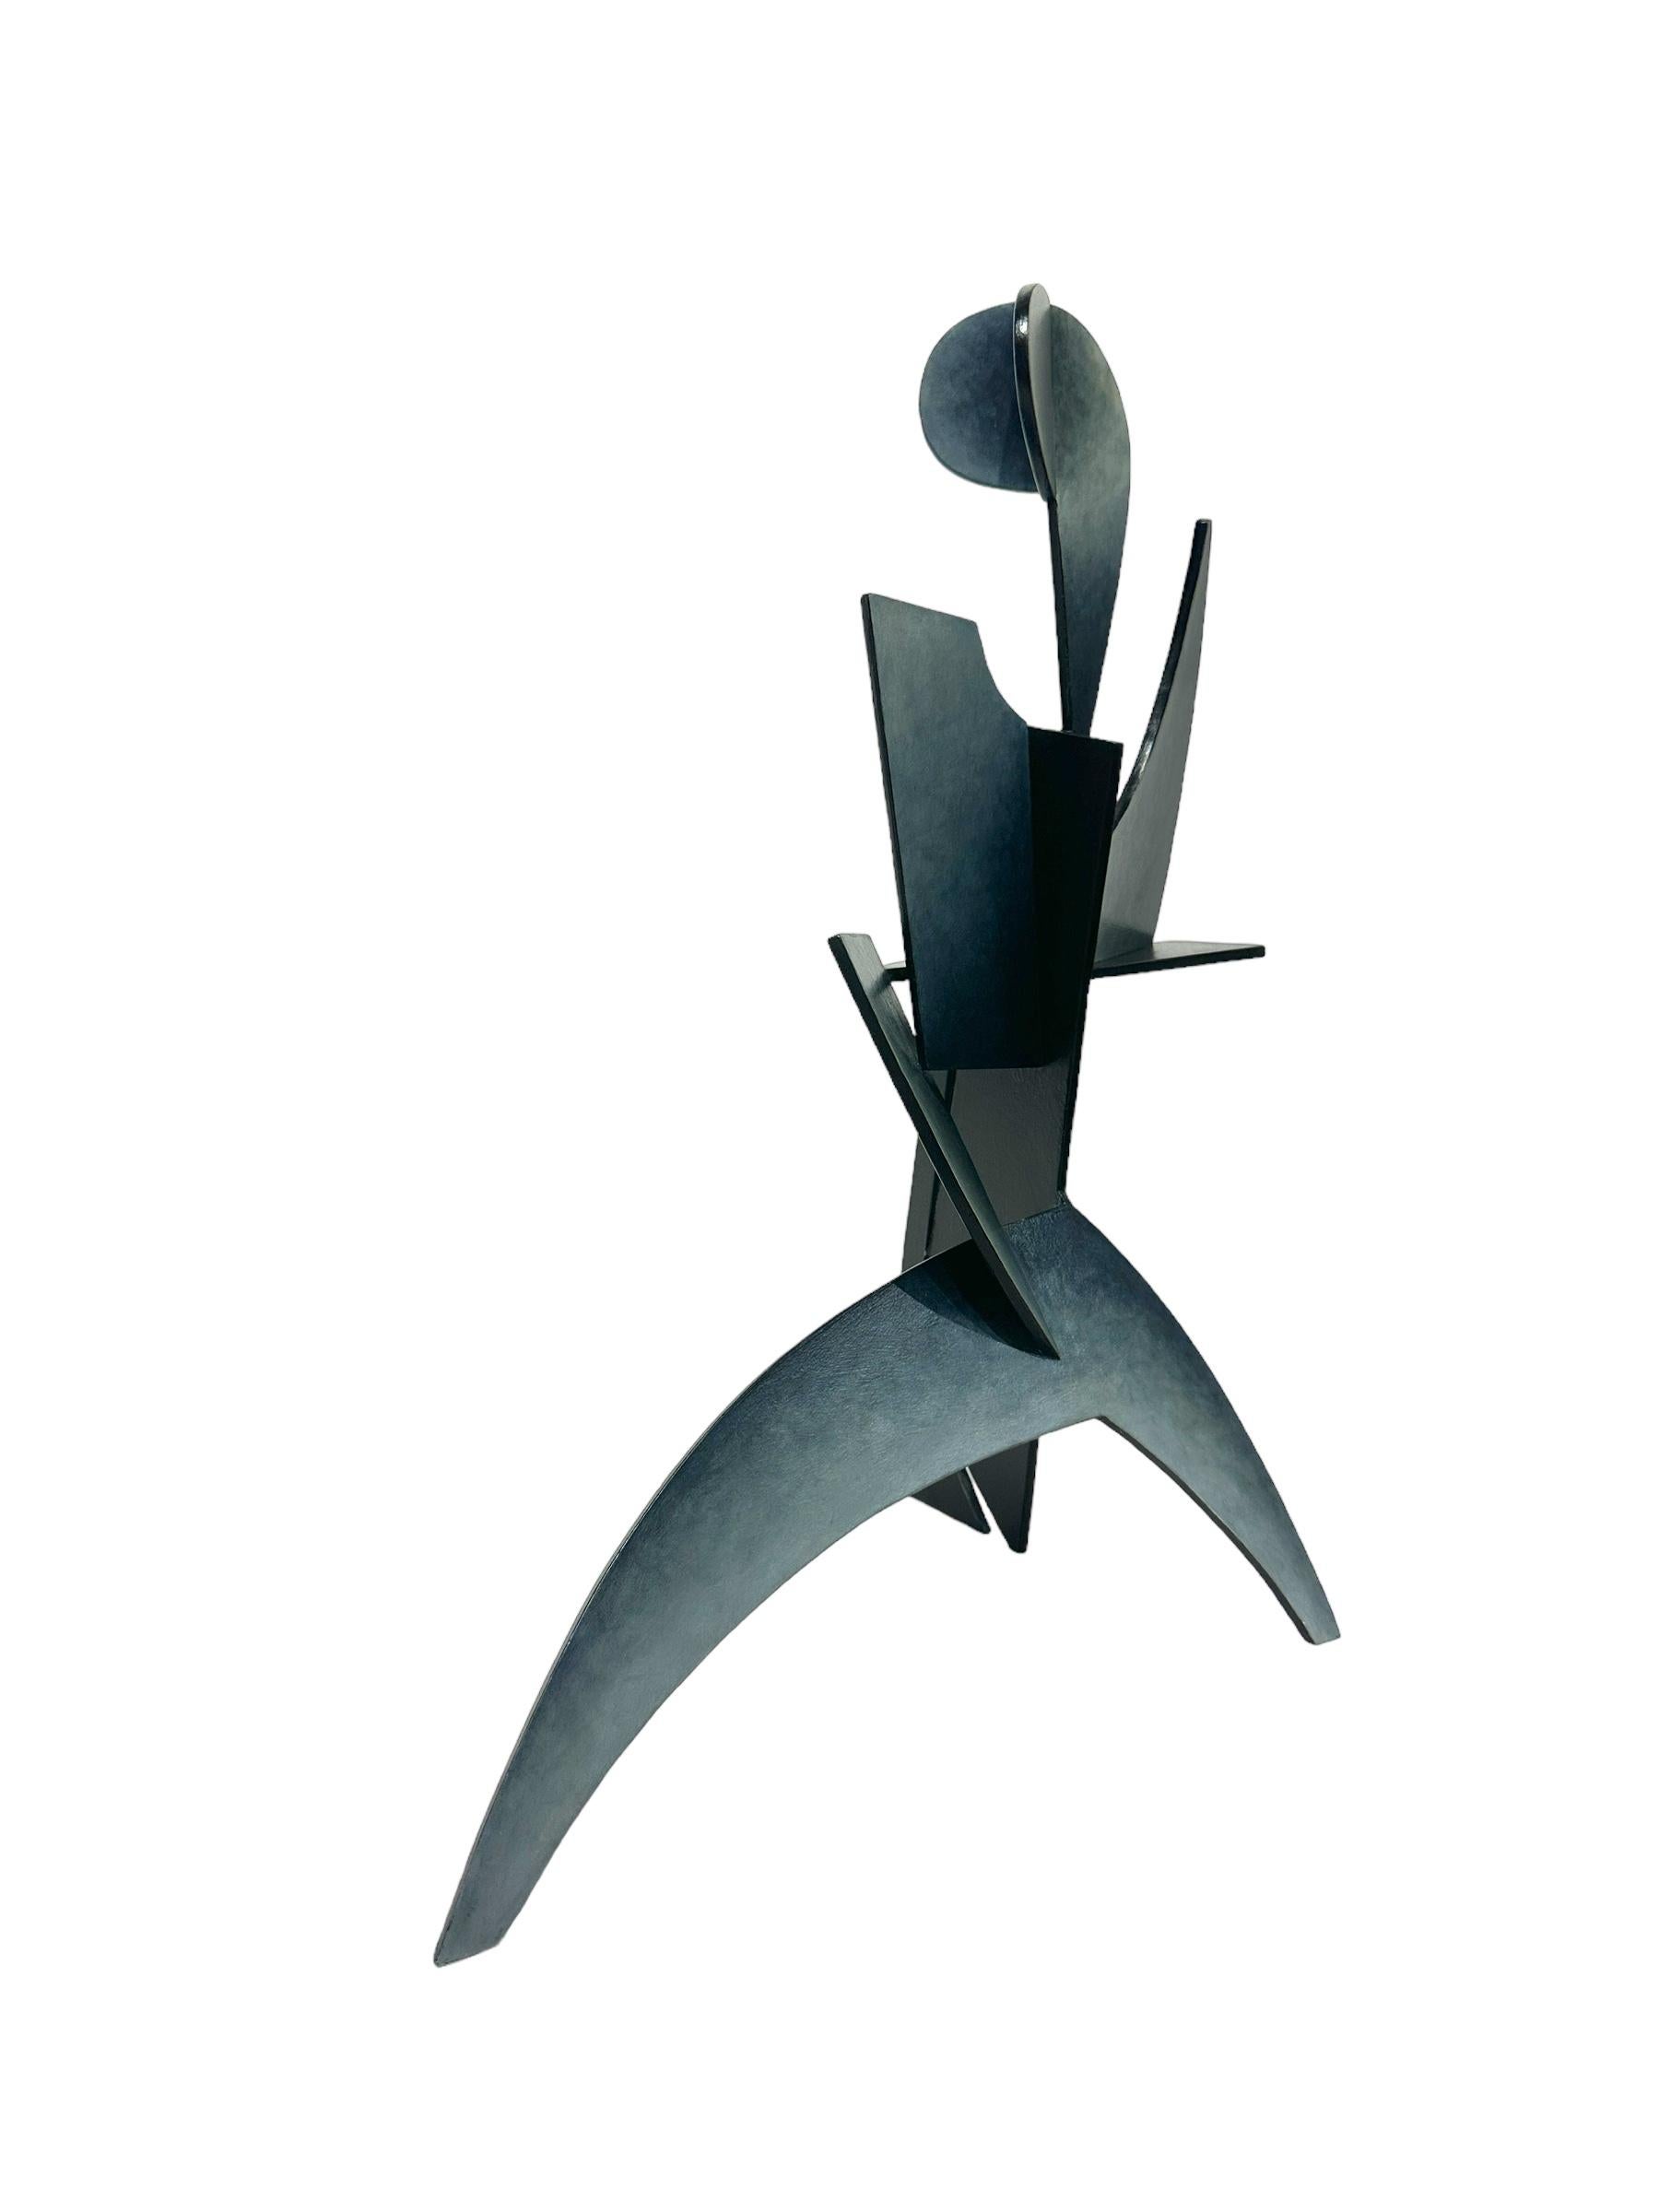 Spirit - Abstrakte geometrische Form, handbemalte, geschweißte Stahlskulptur  (Geometrische Abstraktion), Mixed Media Art, von Chris Hill